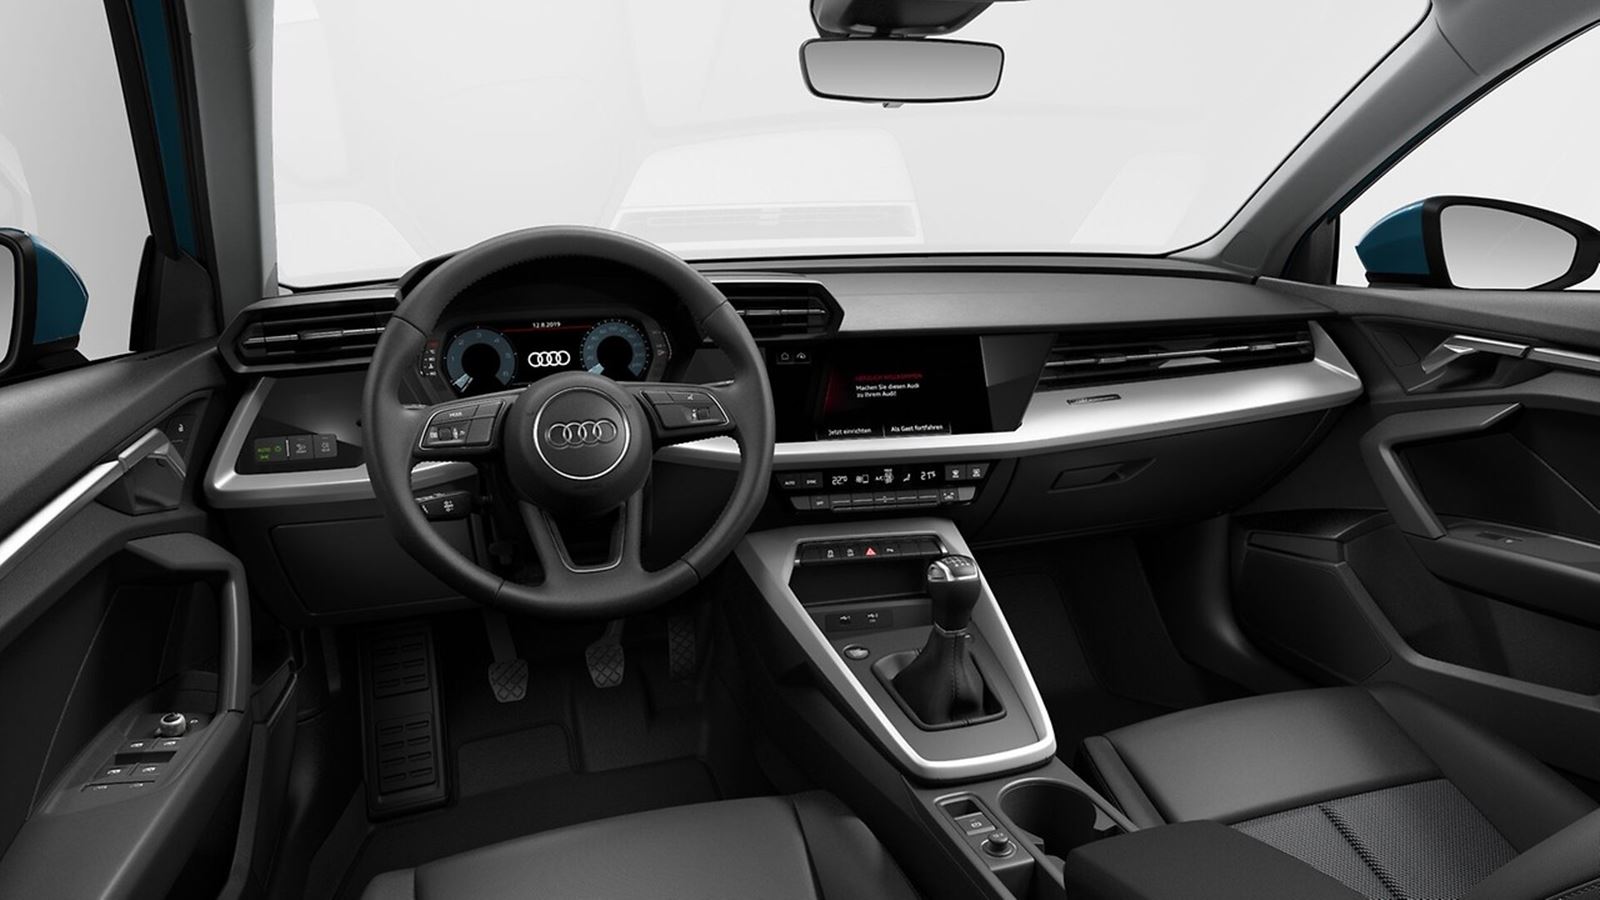 Audi A3 Advanced interior